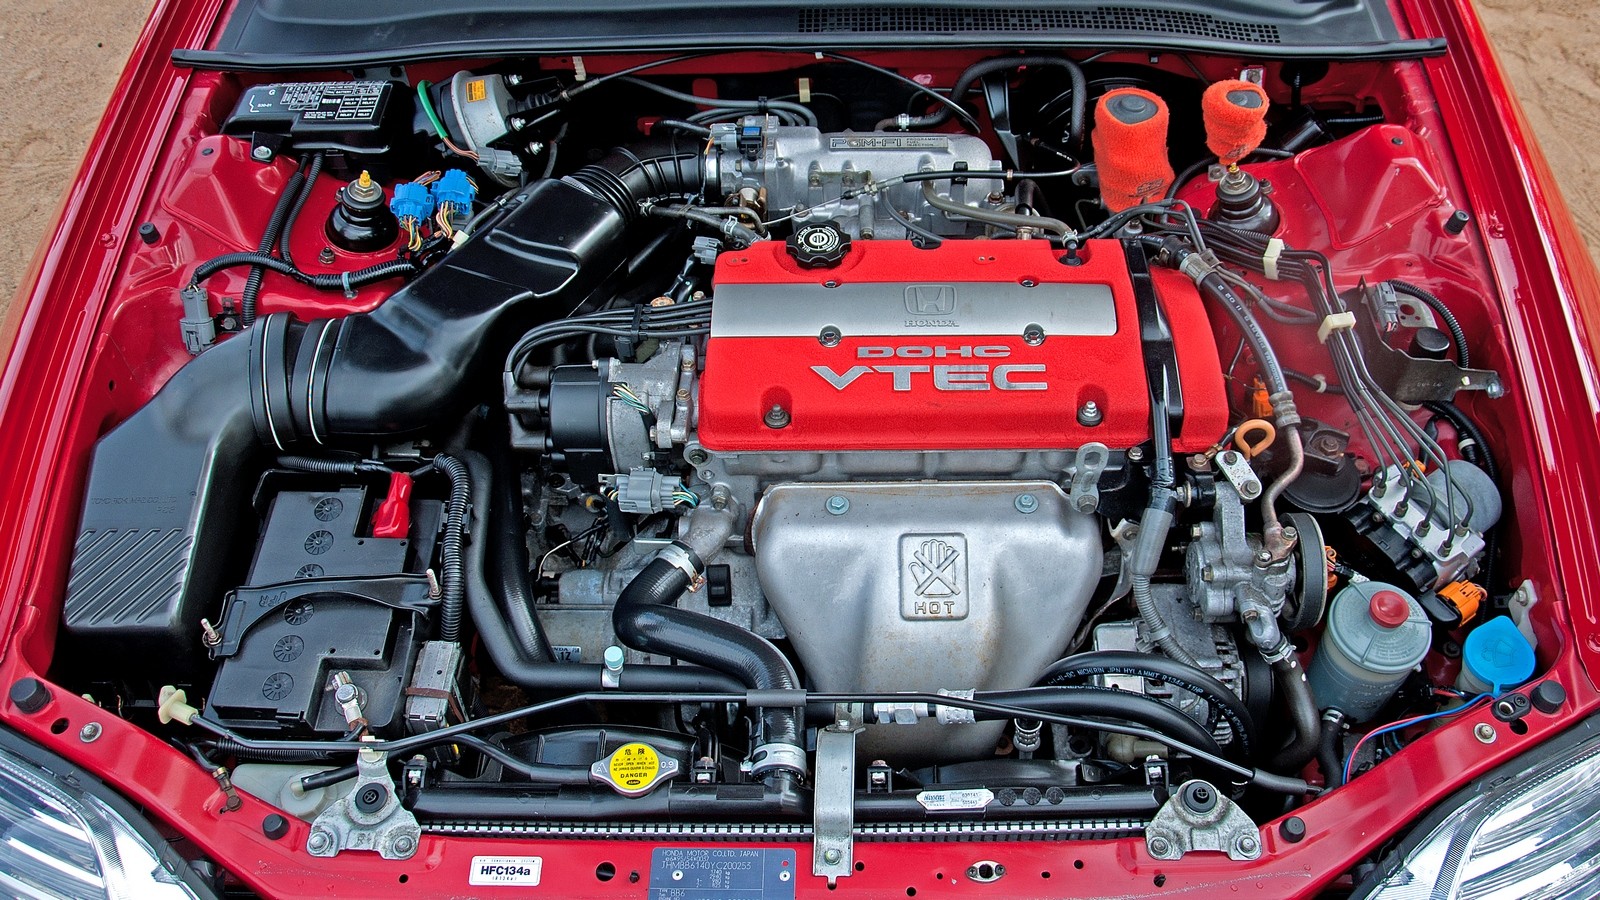 Двигатель h23a honda: технические характеристики, надежность